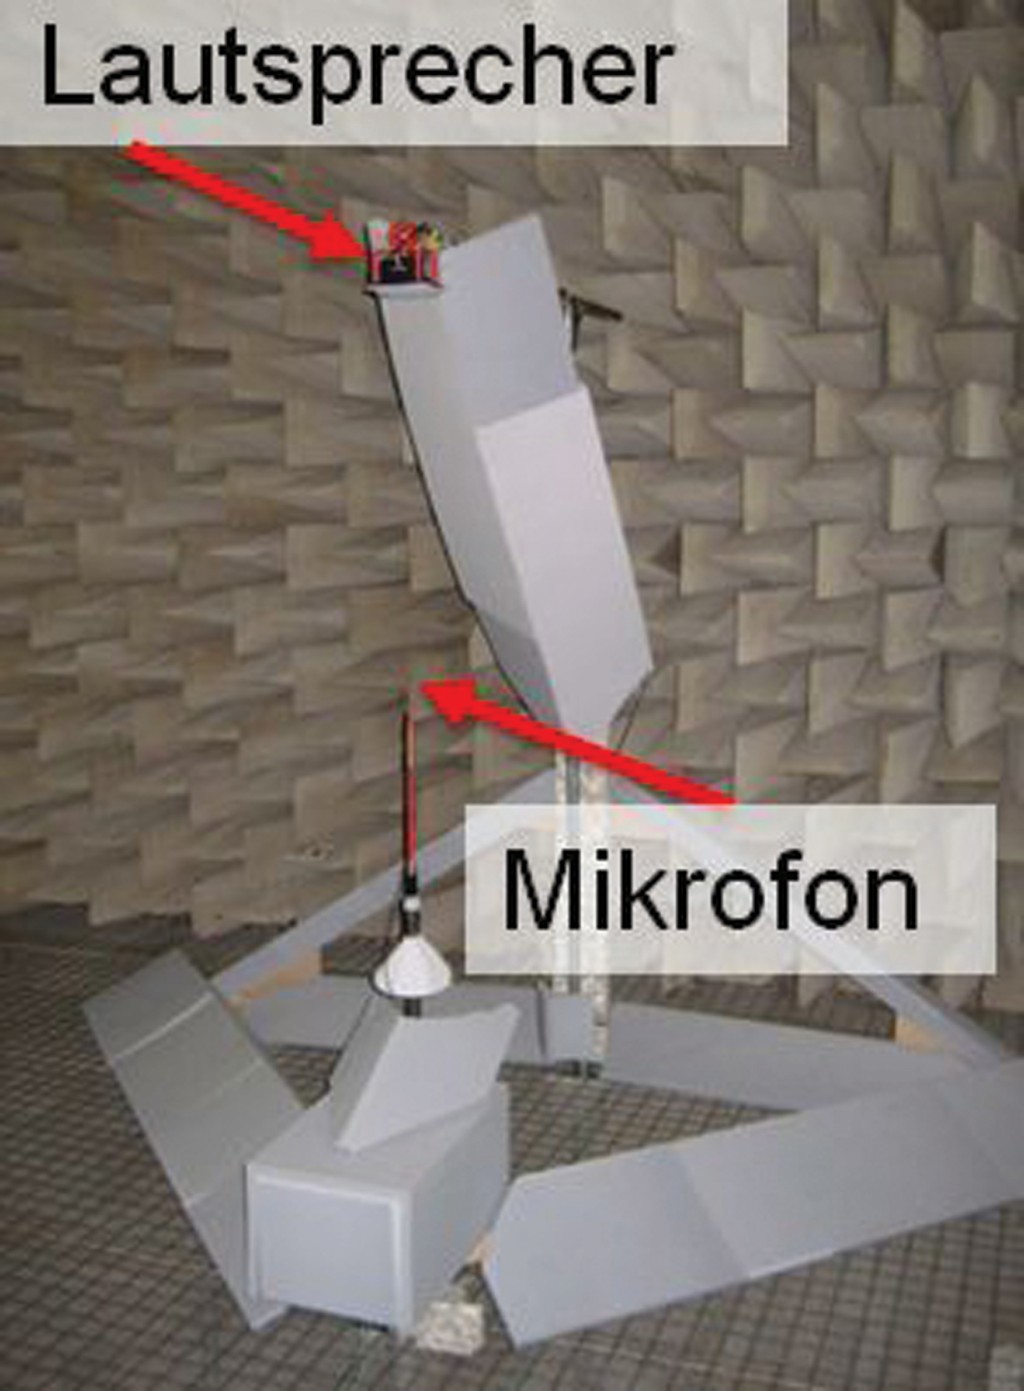 Bild 5 Messplatz zur Bestimmung der Richtcharakteristik von Mikrofonen. Der Lautsprecher kann um das Mikrofon rotiert werden, während das Mikrofon um seine eigene Längsachse gedreht werden kann. Um störende Reflexionen an der Vorrichtung zu verhindern, ist diese zu großen Teilen mit Absorbermaterial bedeckt. Quelle: PTB/IFA